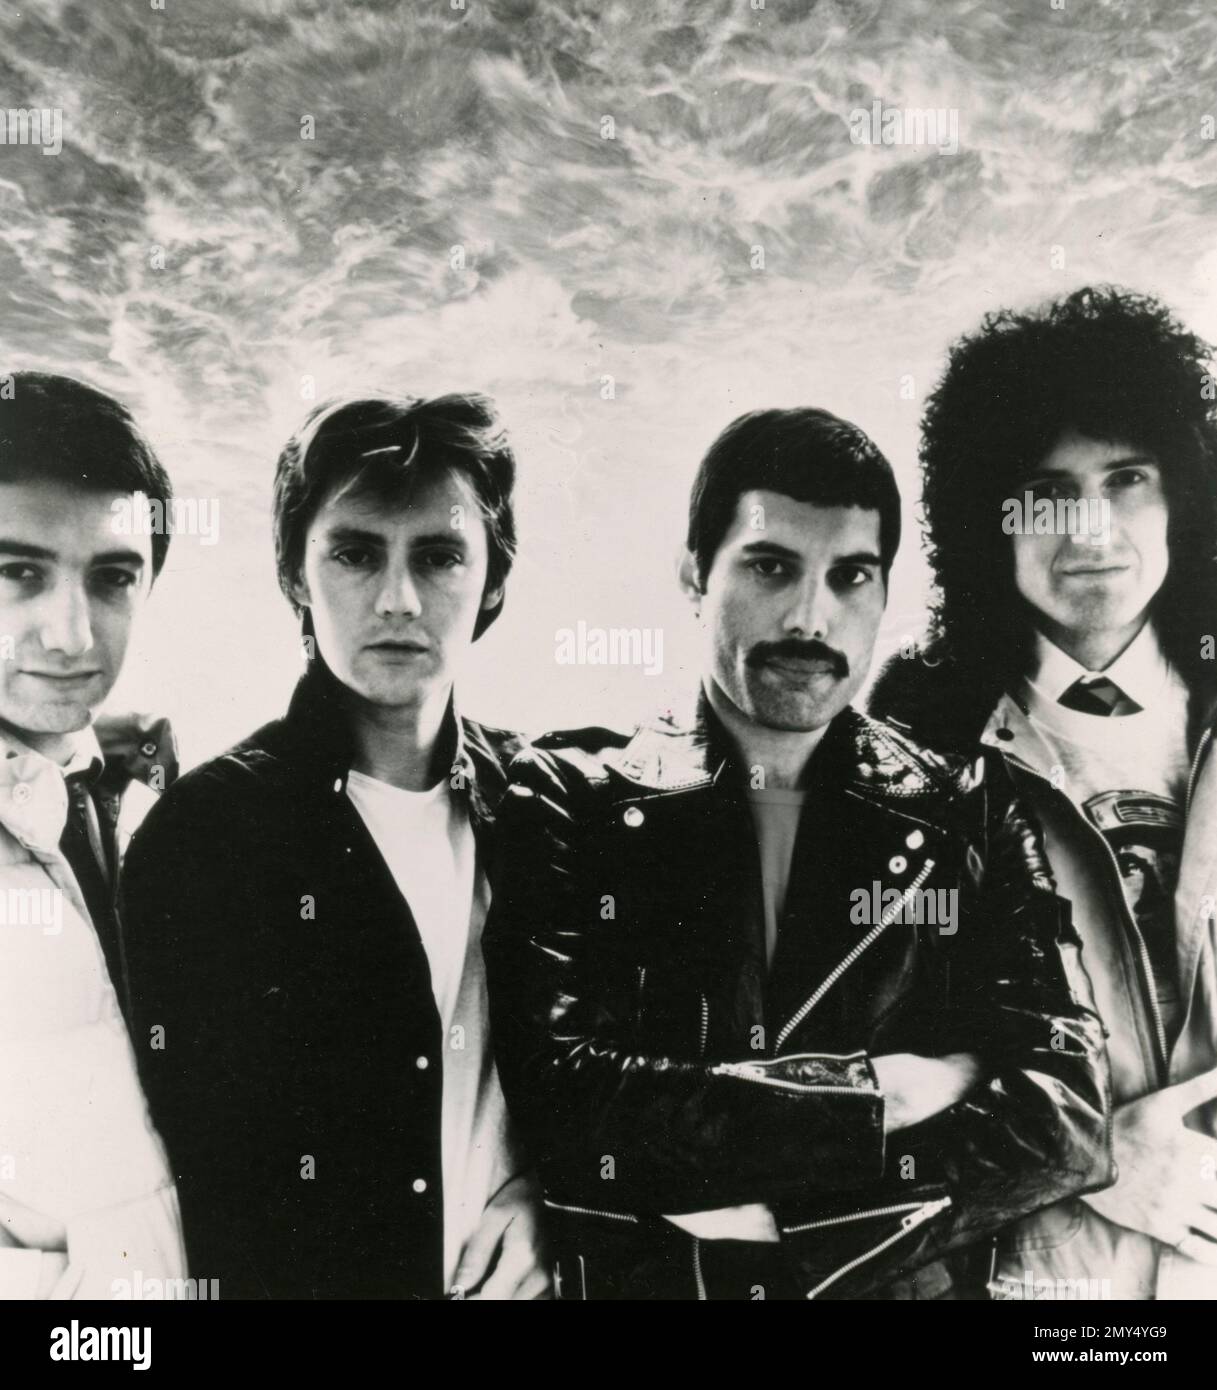 Membres du groupe de rock pop britannique Queen: From Left John Deacon, Roger Taylor, Freddie Mercury et Brian May, UK 1970s Banque D'Images